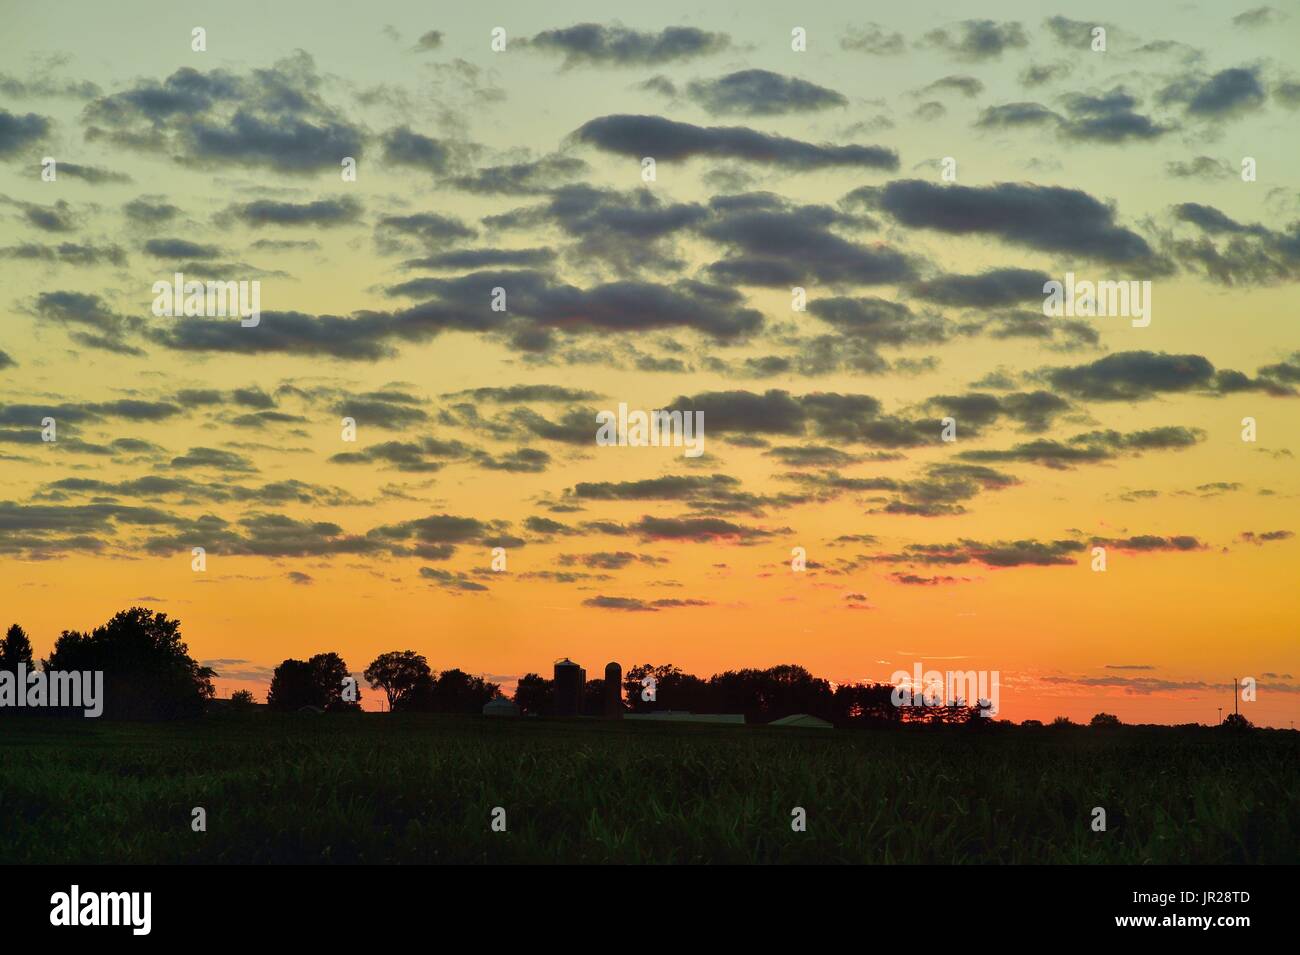 Burlington, Illinois, Stati Uniti d'America. Tempo equo deriva nuvole sopra il paese di fattoria Aggiungi consistenza e colore di un già vivaci tramonto d'estate. Foto Stock